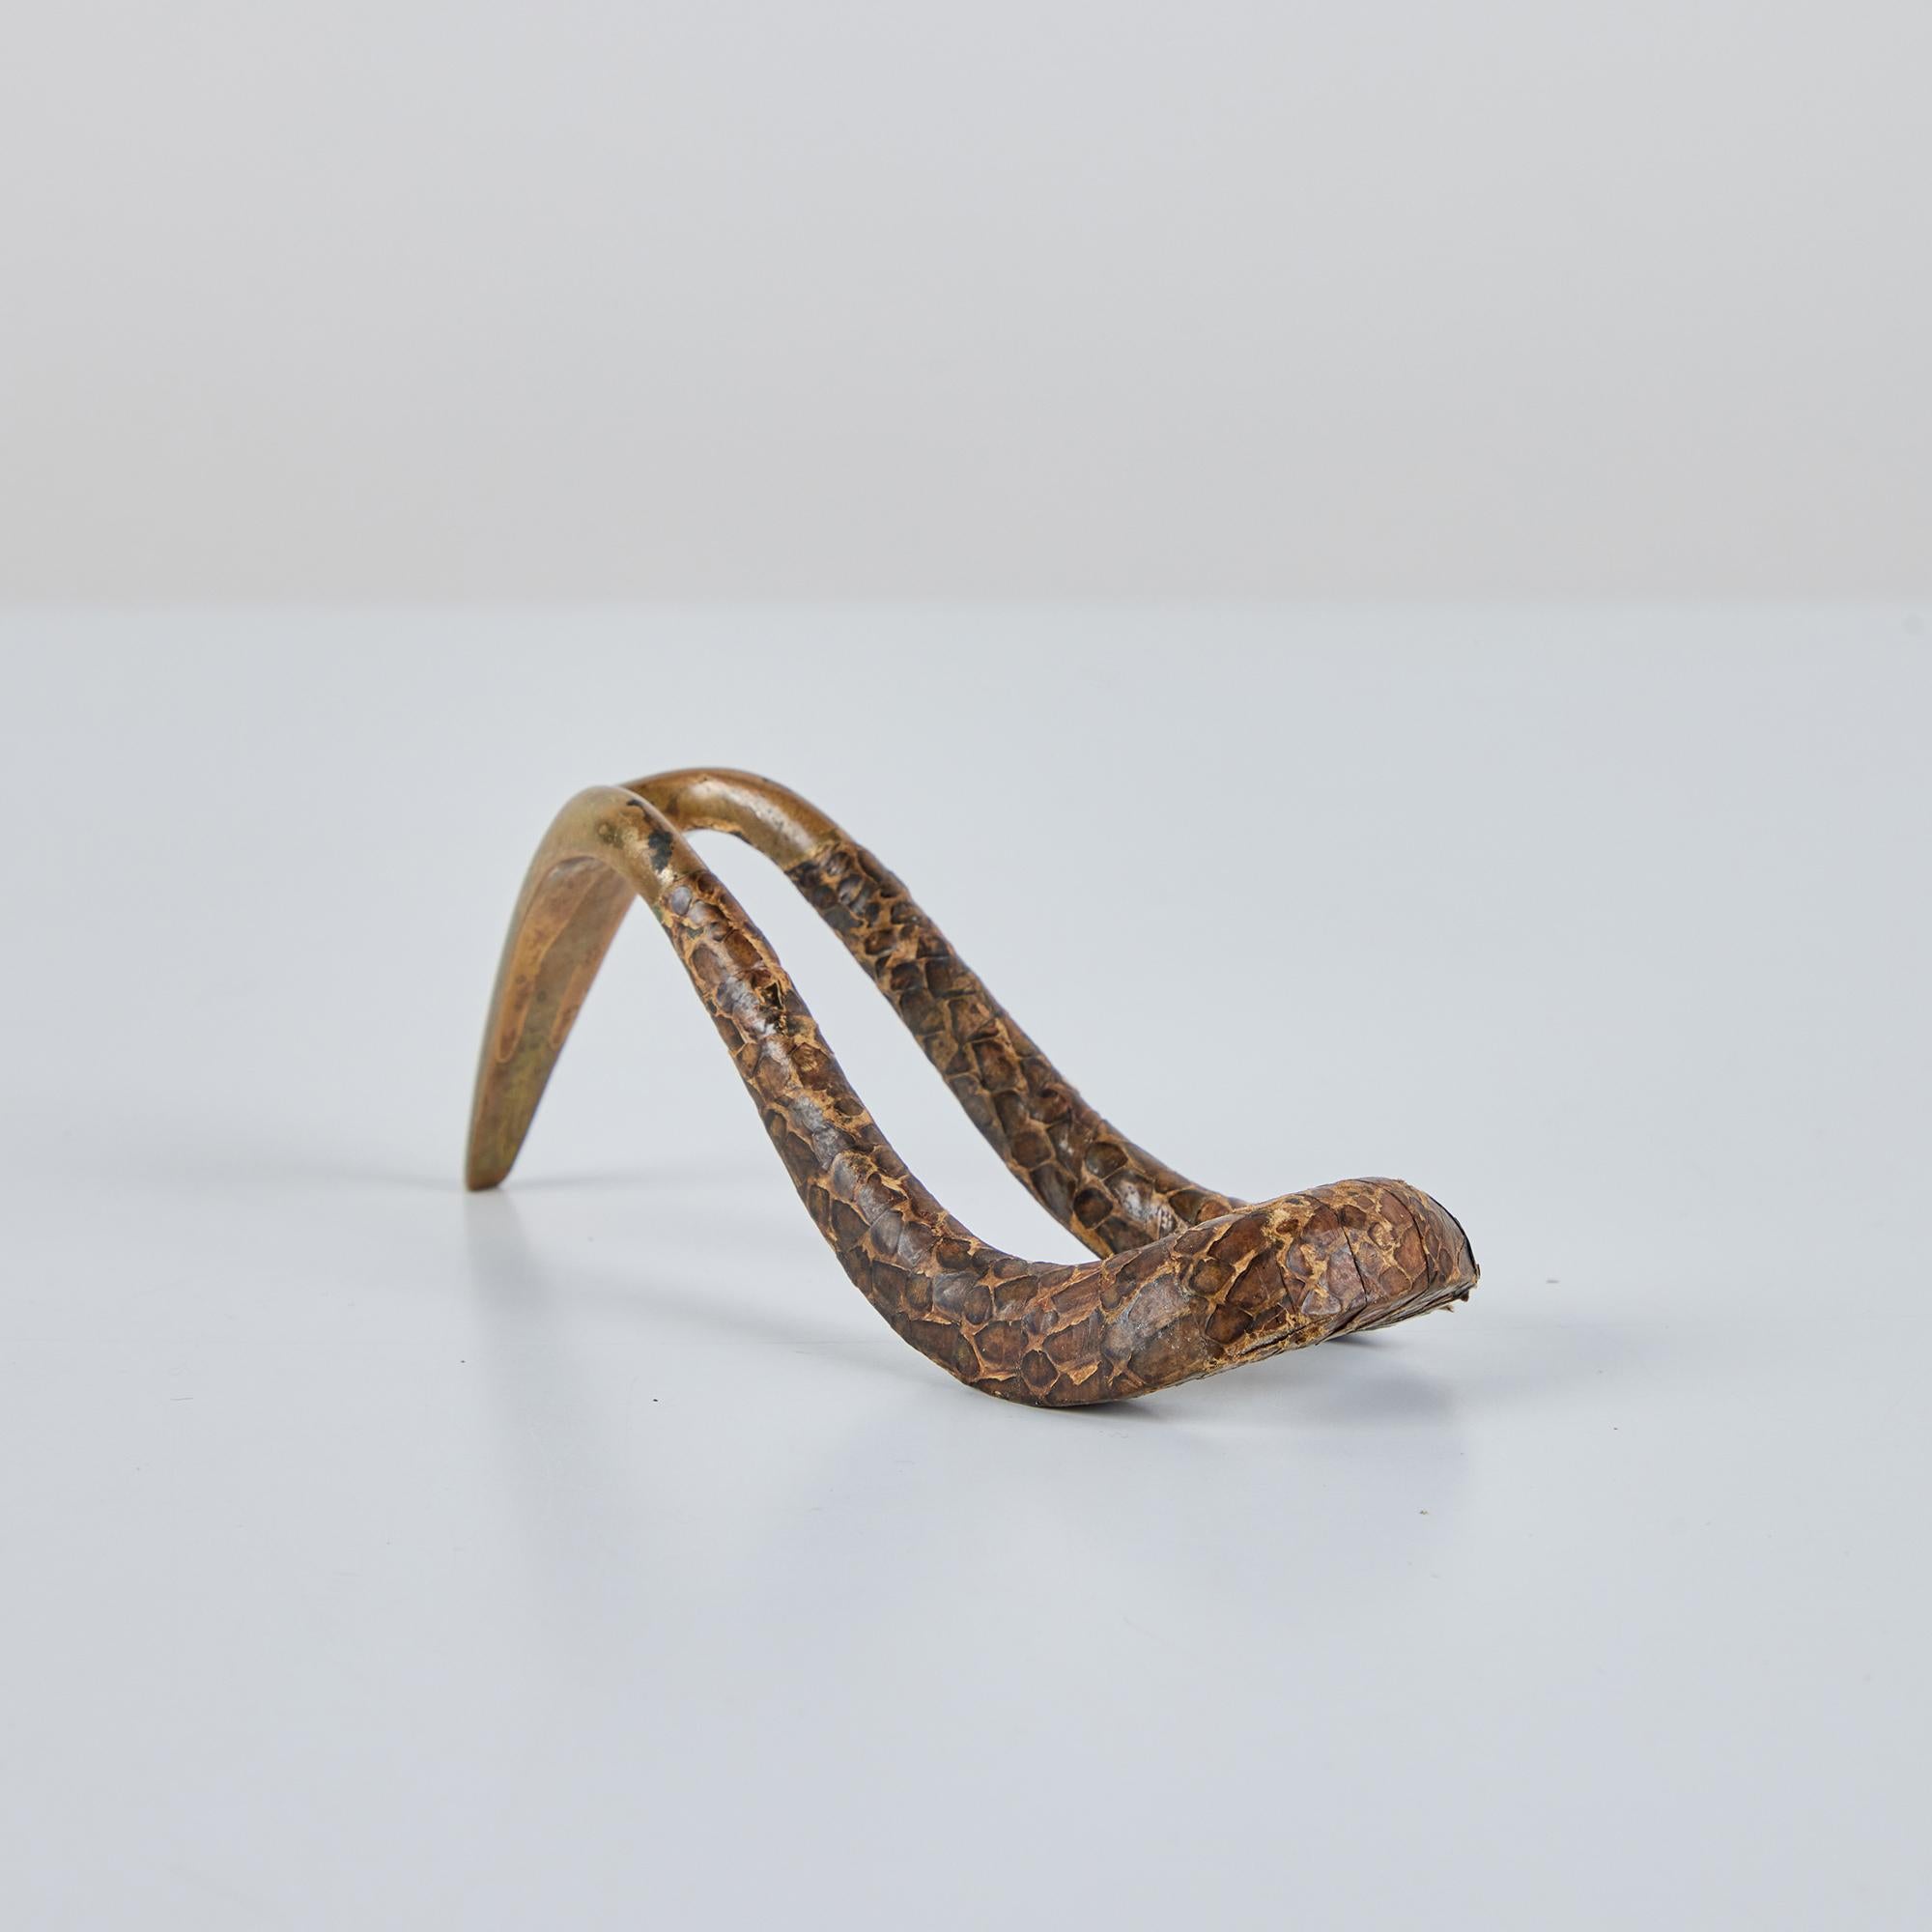 Porte-pipe en laiton et peau de serpent du designer industriel autrichien Carl Auböck, c.1950. Le cadre incurvé en laiton est partiellement enveloppé d'une peau de serpent marron et tan.

Dimensions :
5